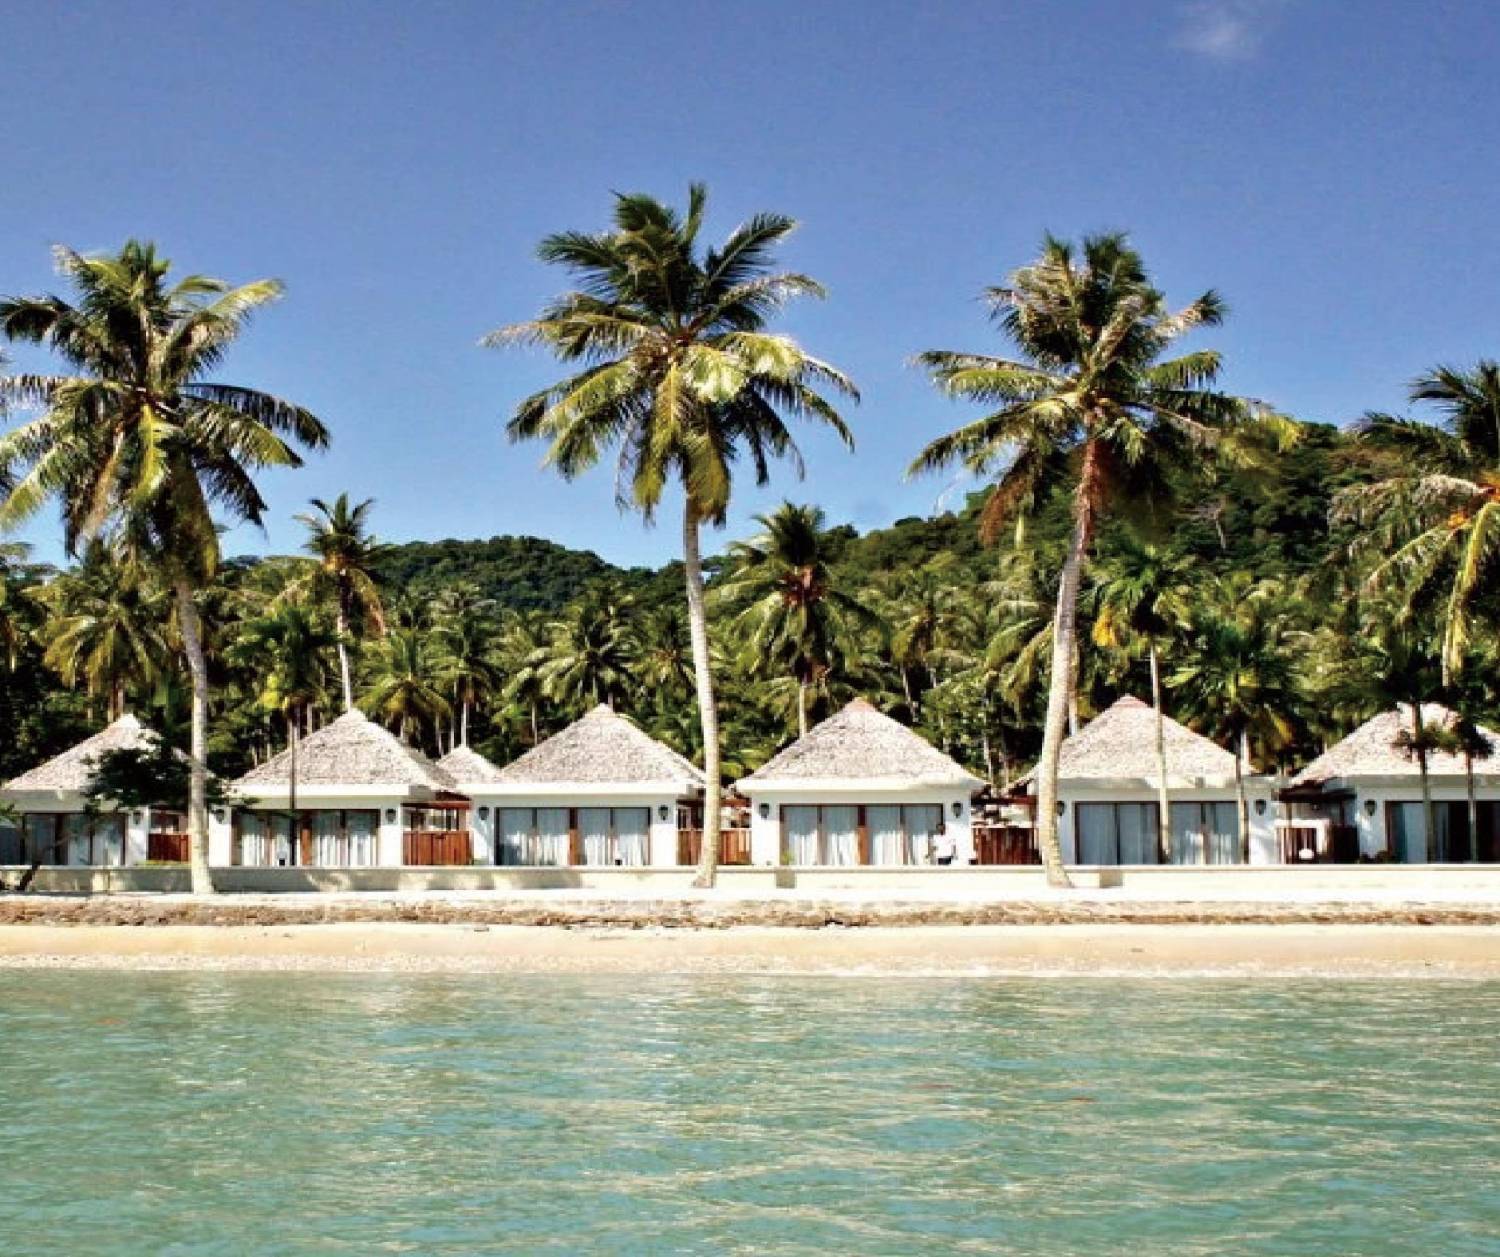 【印尼】Pulau Weh Resort 6日5夜潛水自由行套票